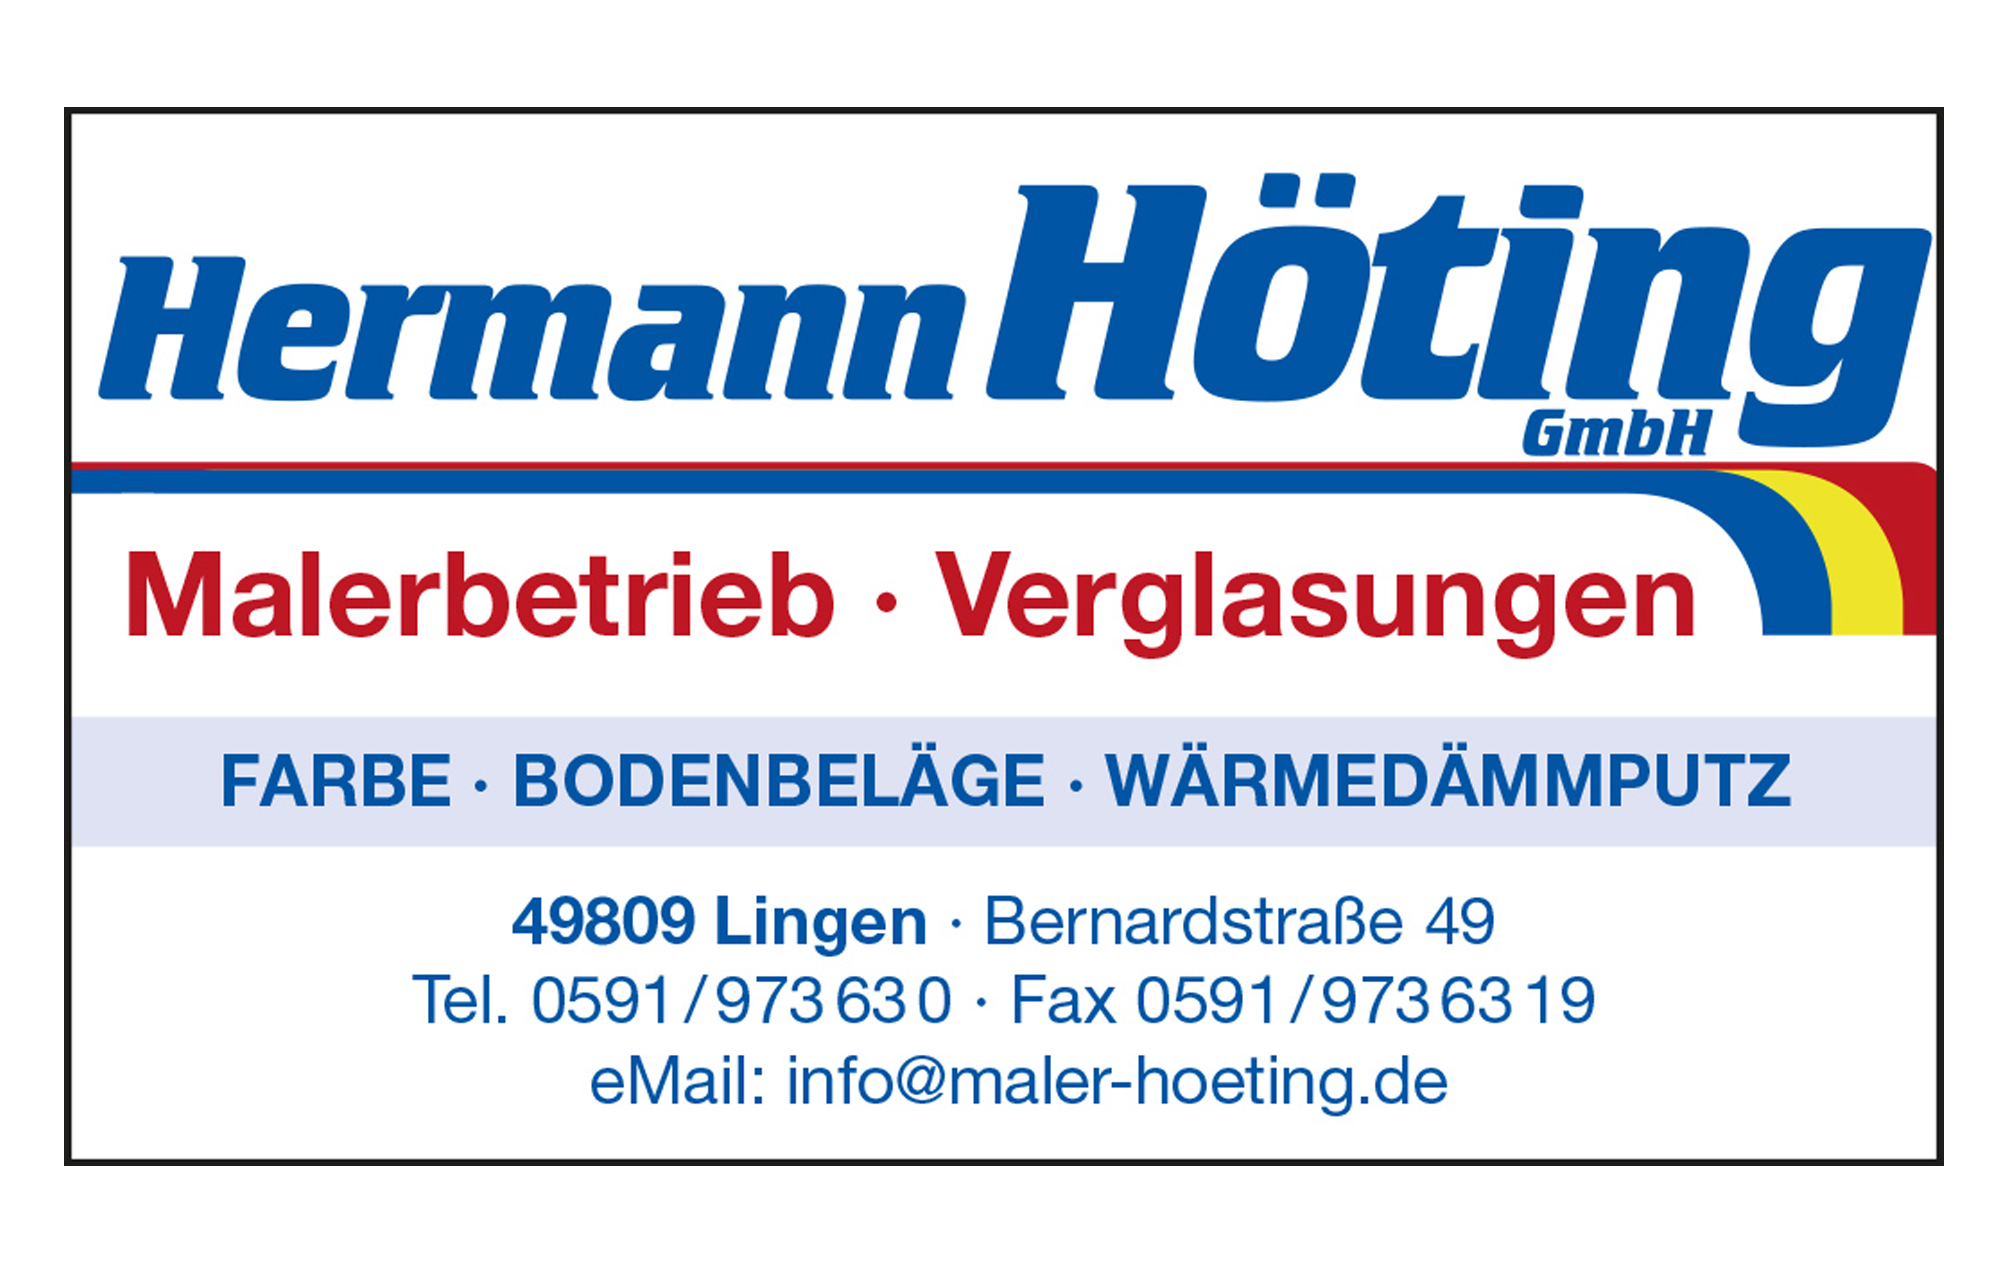 Hermann Höting GmbH